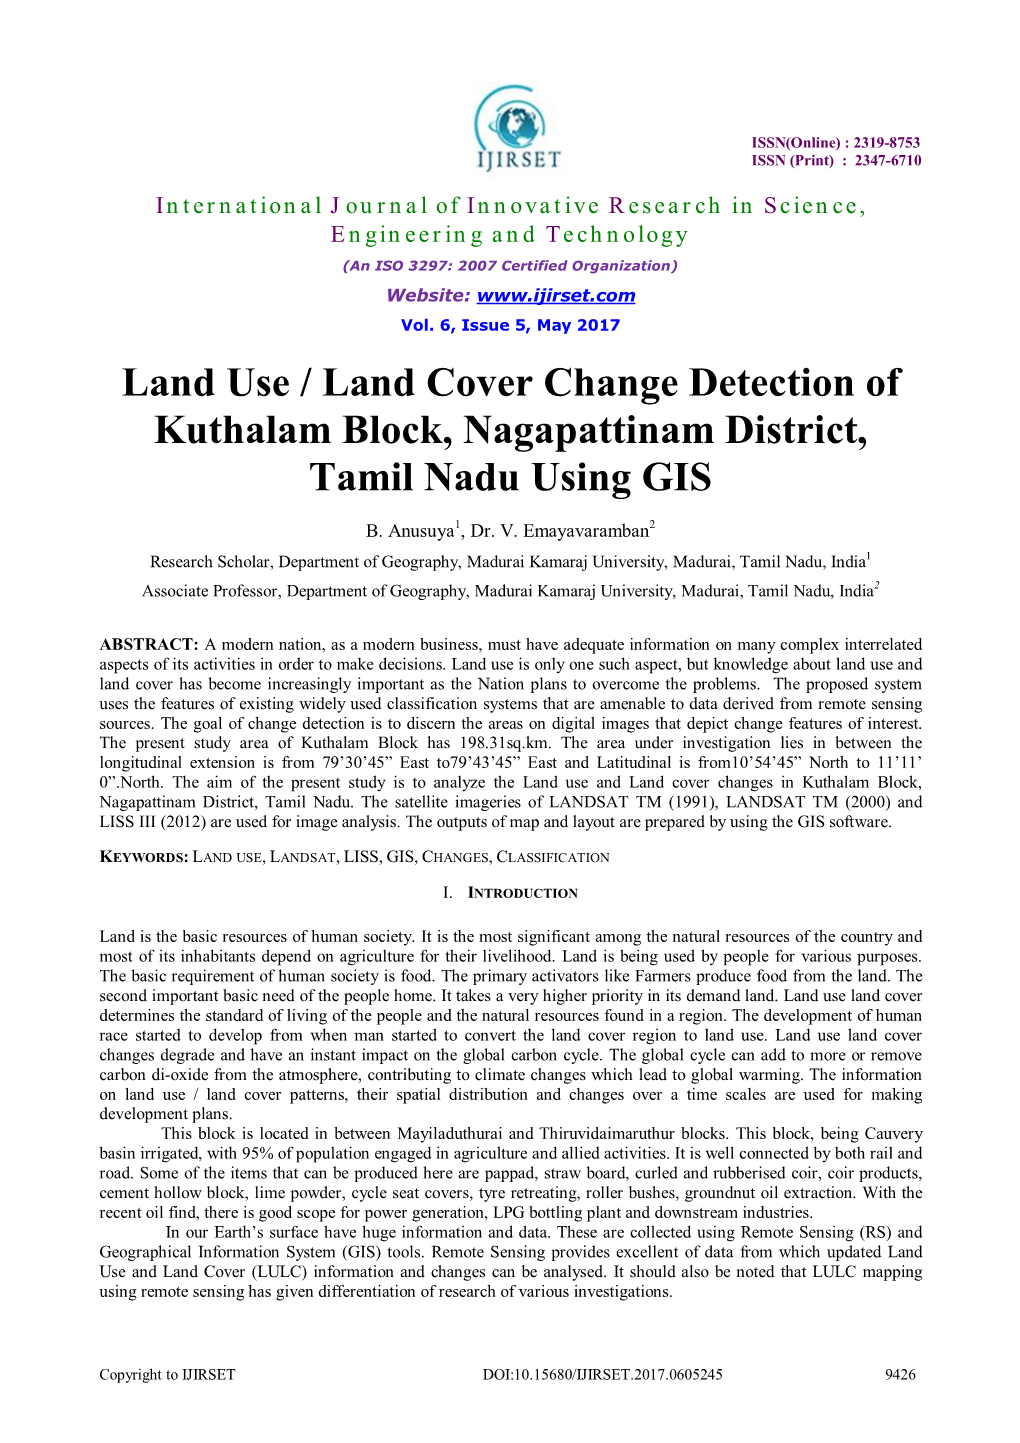 Land Use / Land Cover Change Detection of Kuthalam Block, Nagapattinam District, Tamil Nadu Using GIS